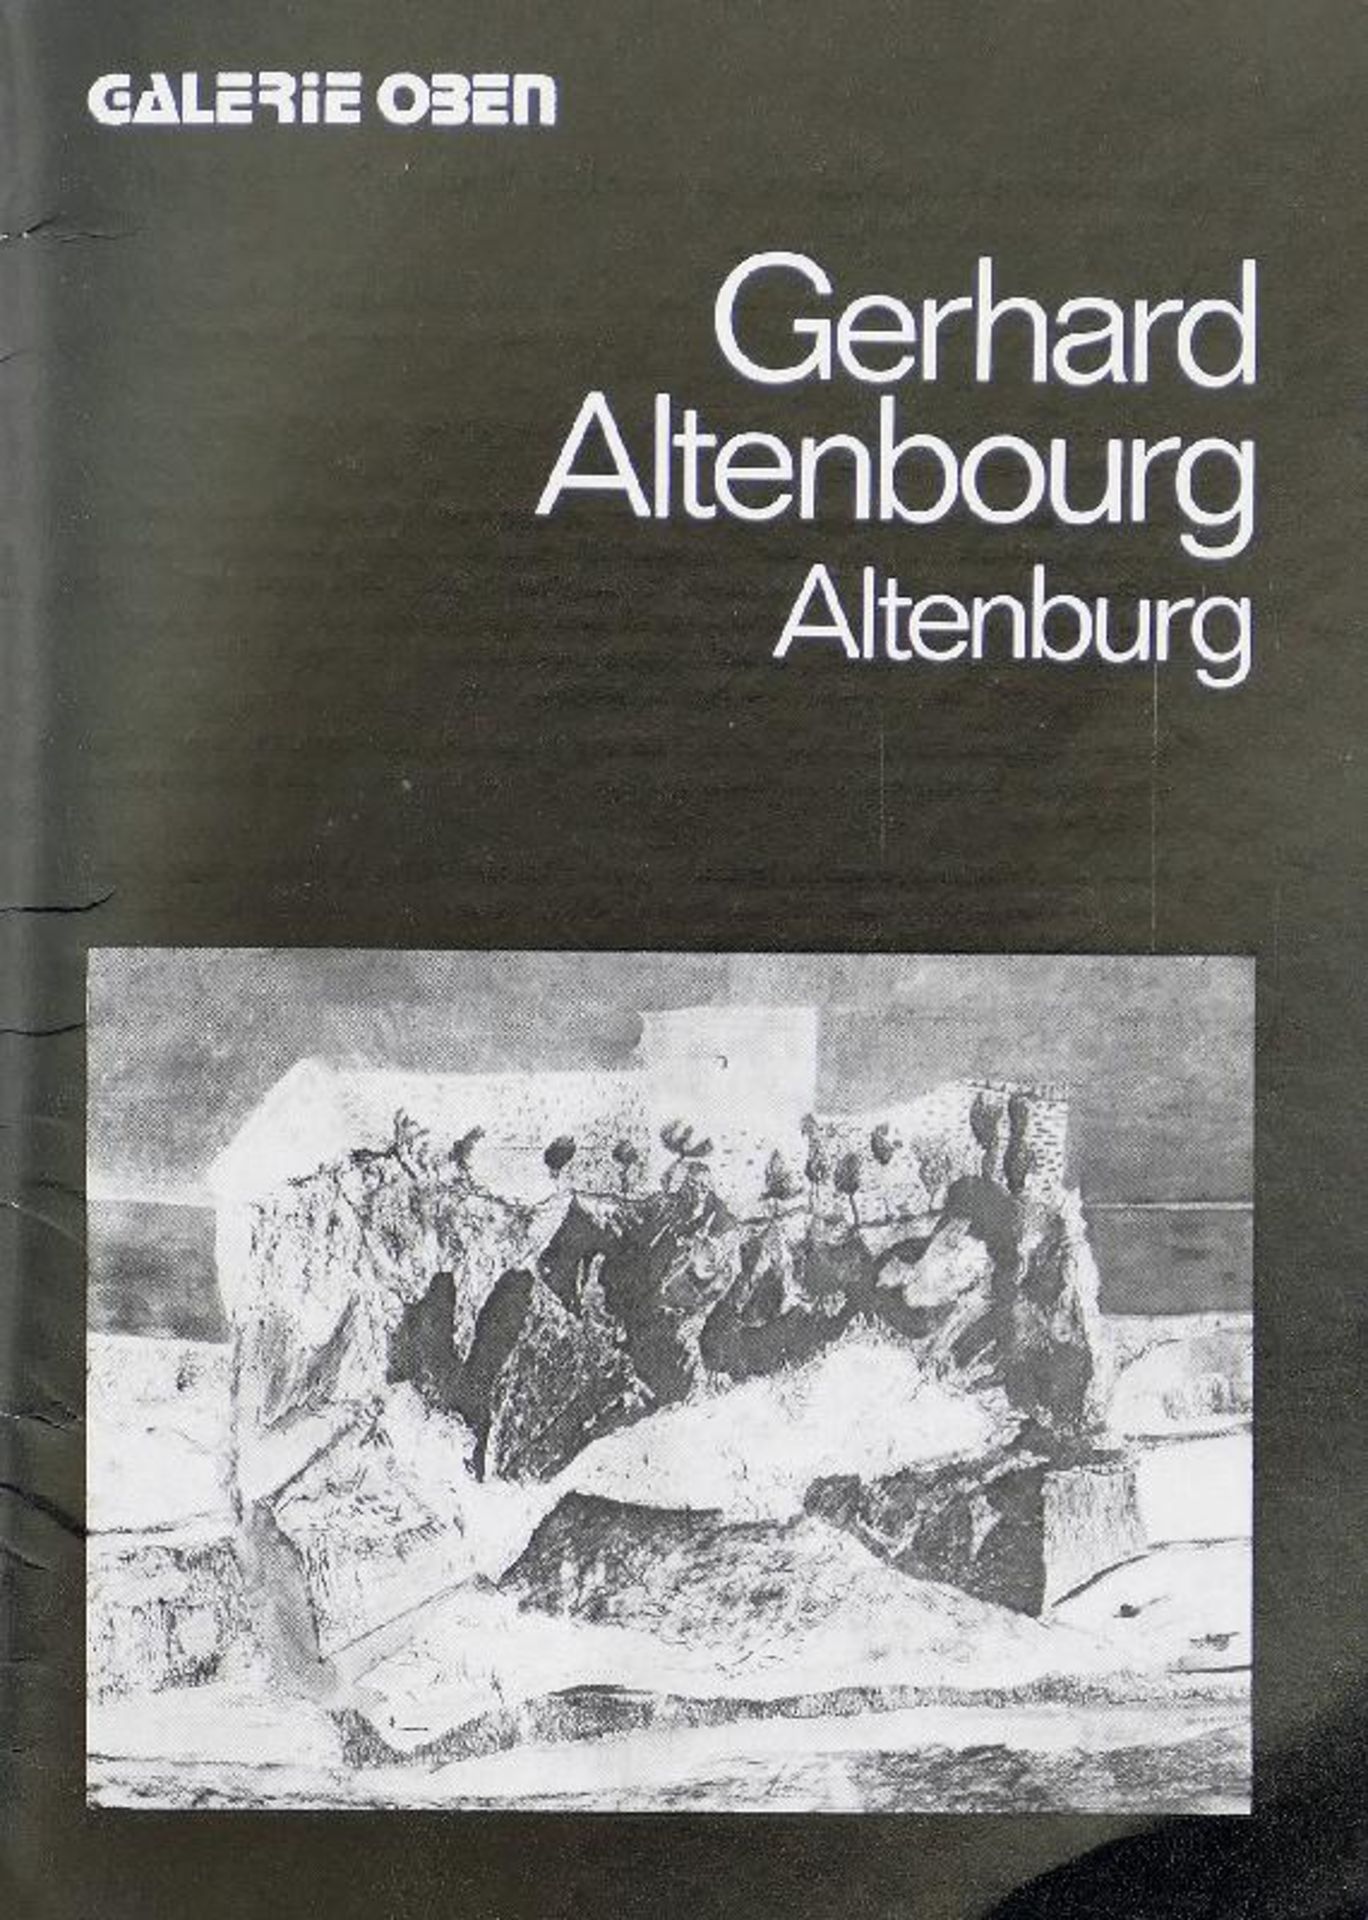 Altenbourg, Gerhard [i.e. Gerhard Ströch] - Gerhard Altenbourg: Altenburg - Image 2 of 2